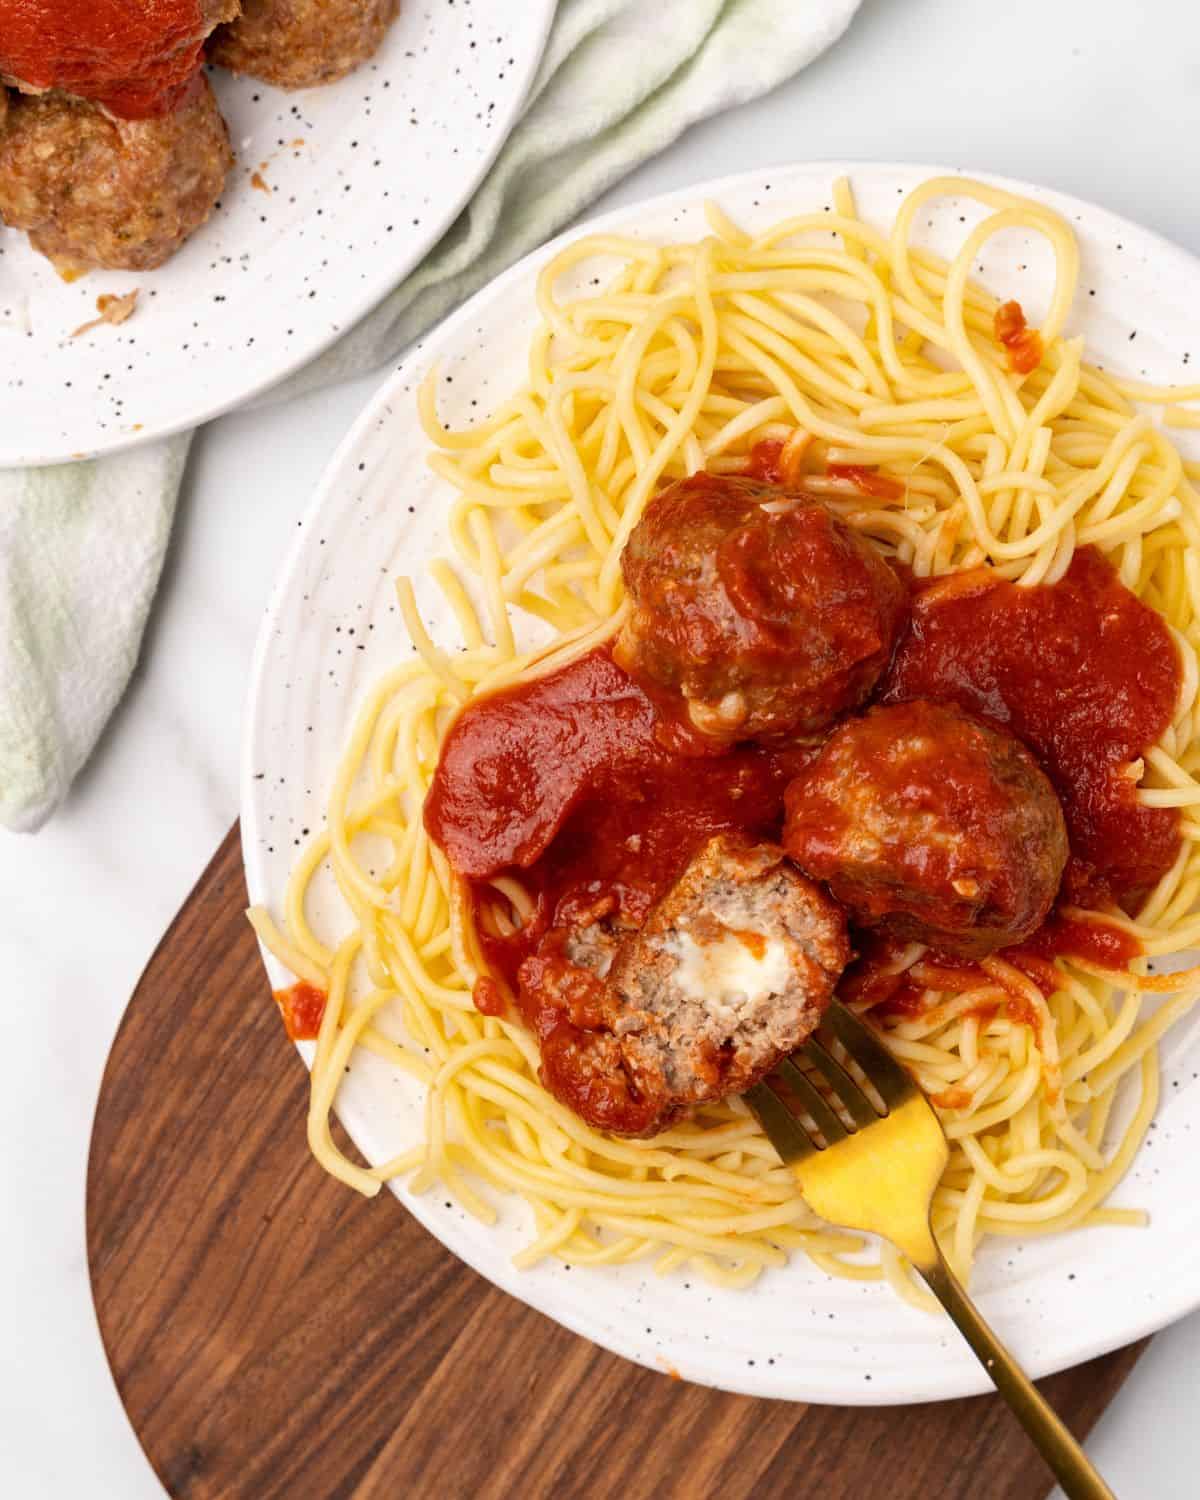 stuffed mozzarella meatballs on top of pasta.